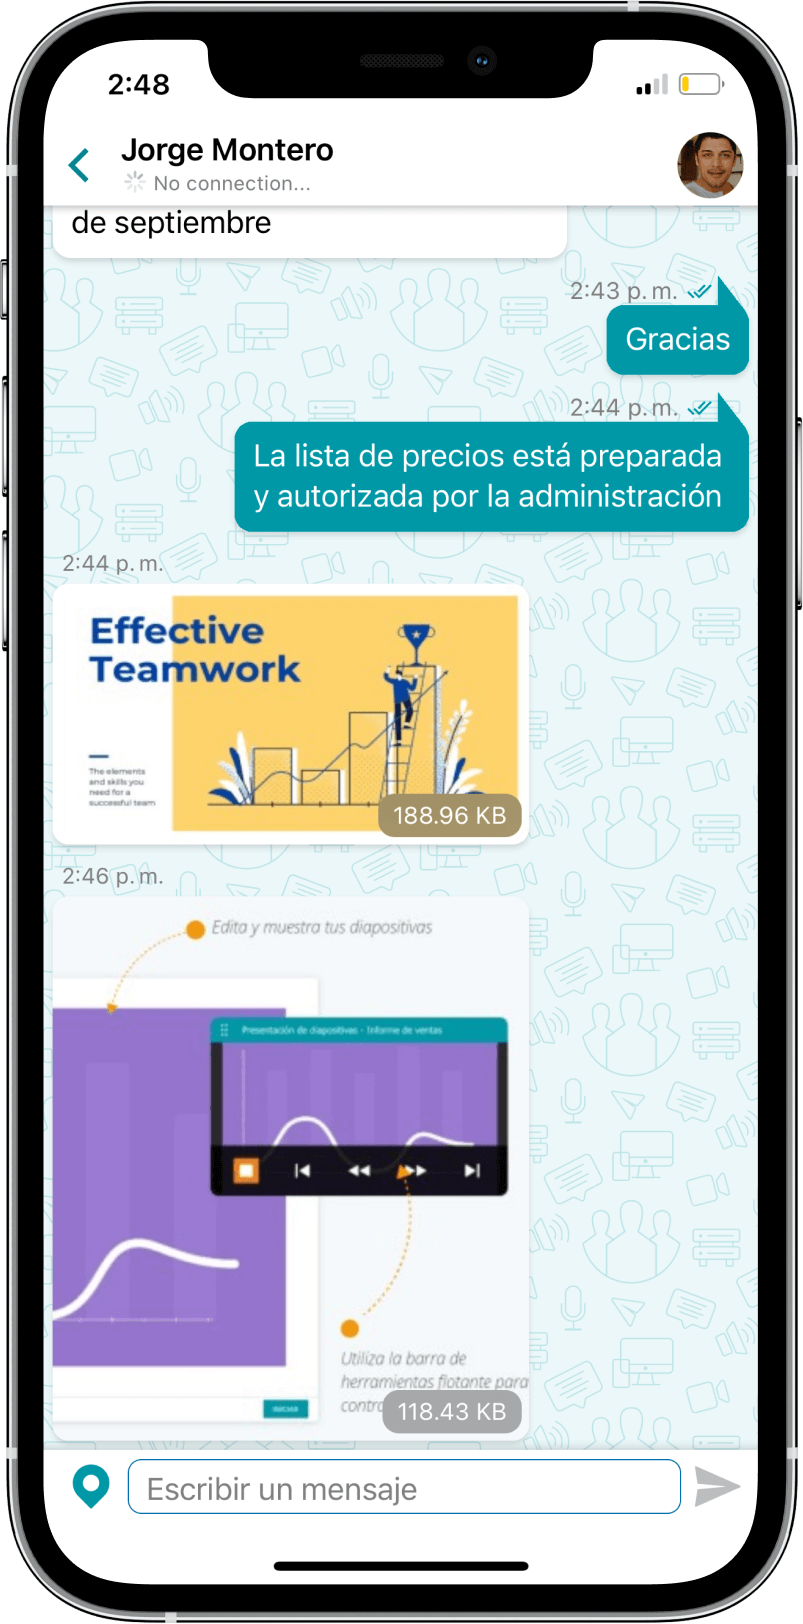 TrueConf 3.3 para iOS: nueva interfaz de usuario, modo de reunión inteligente, acceso sin conexión a chats, contactos e historial de llamadas 14